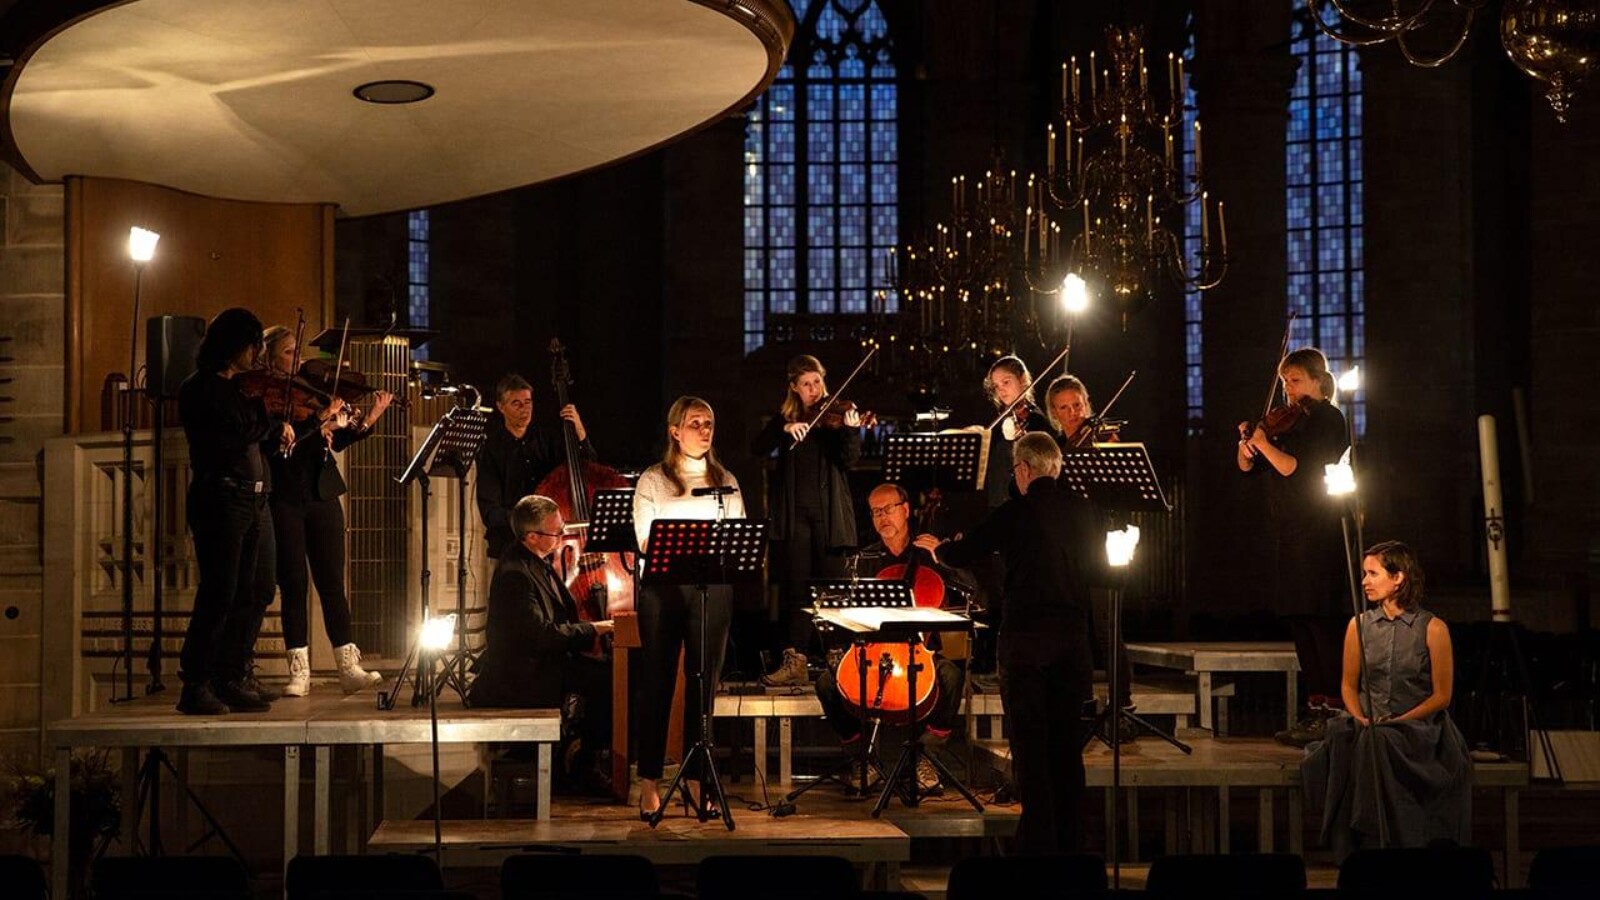 Dometica concert laurenskerk rotterdam